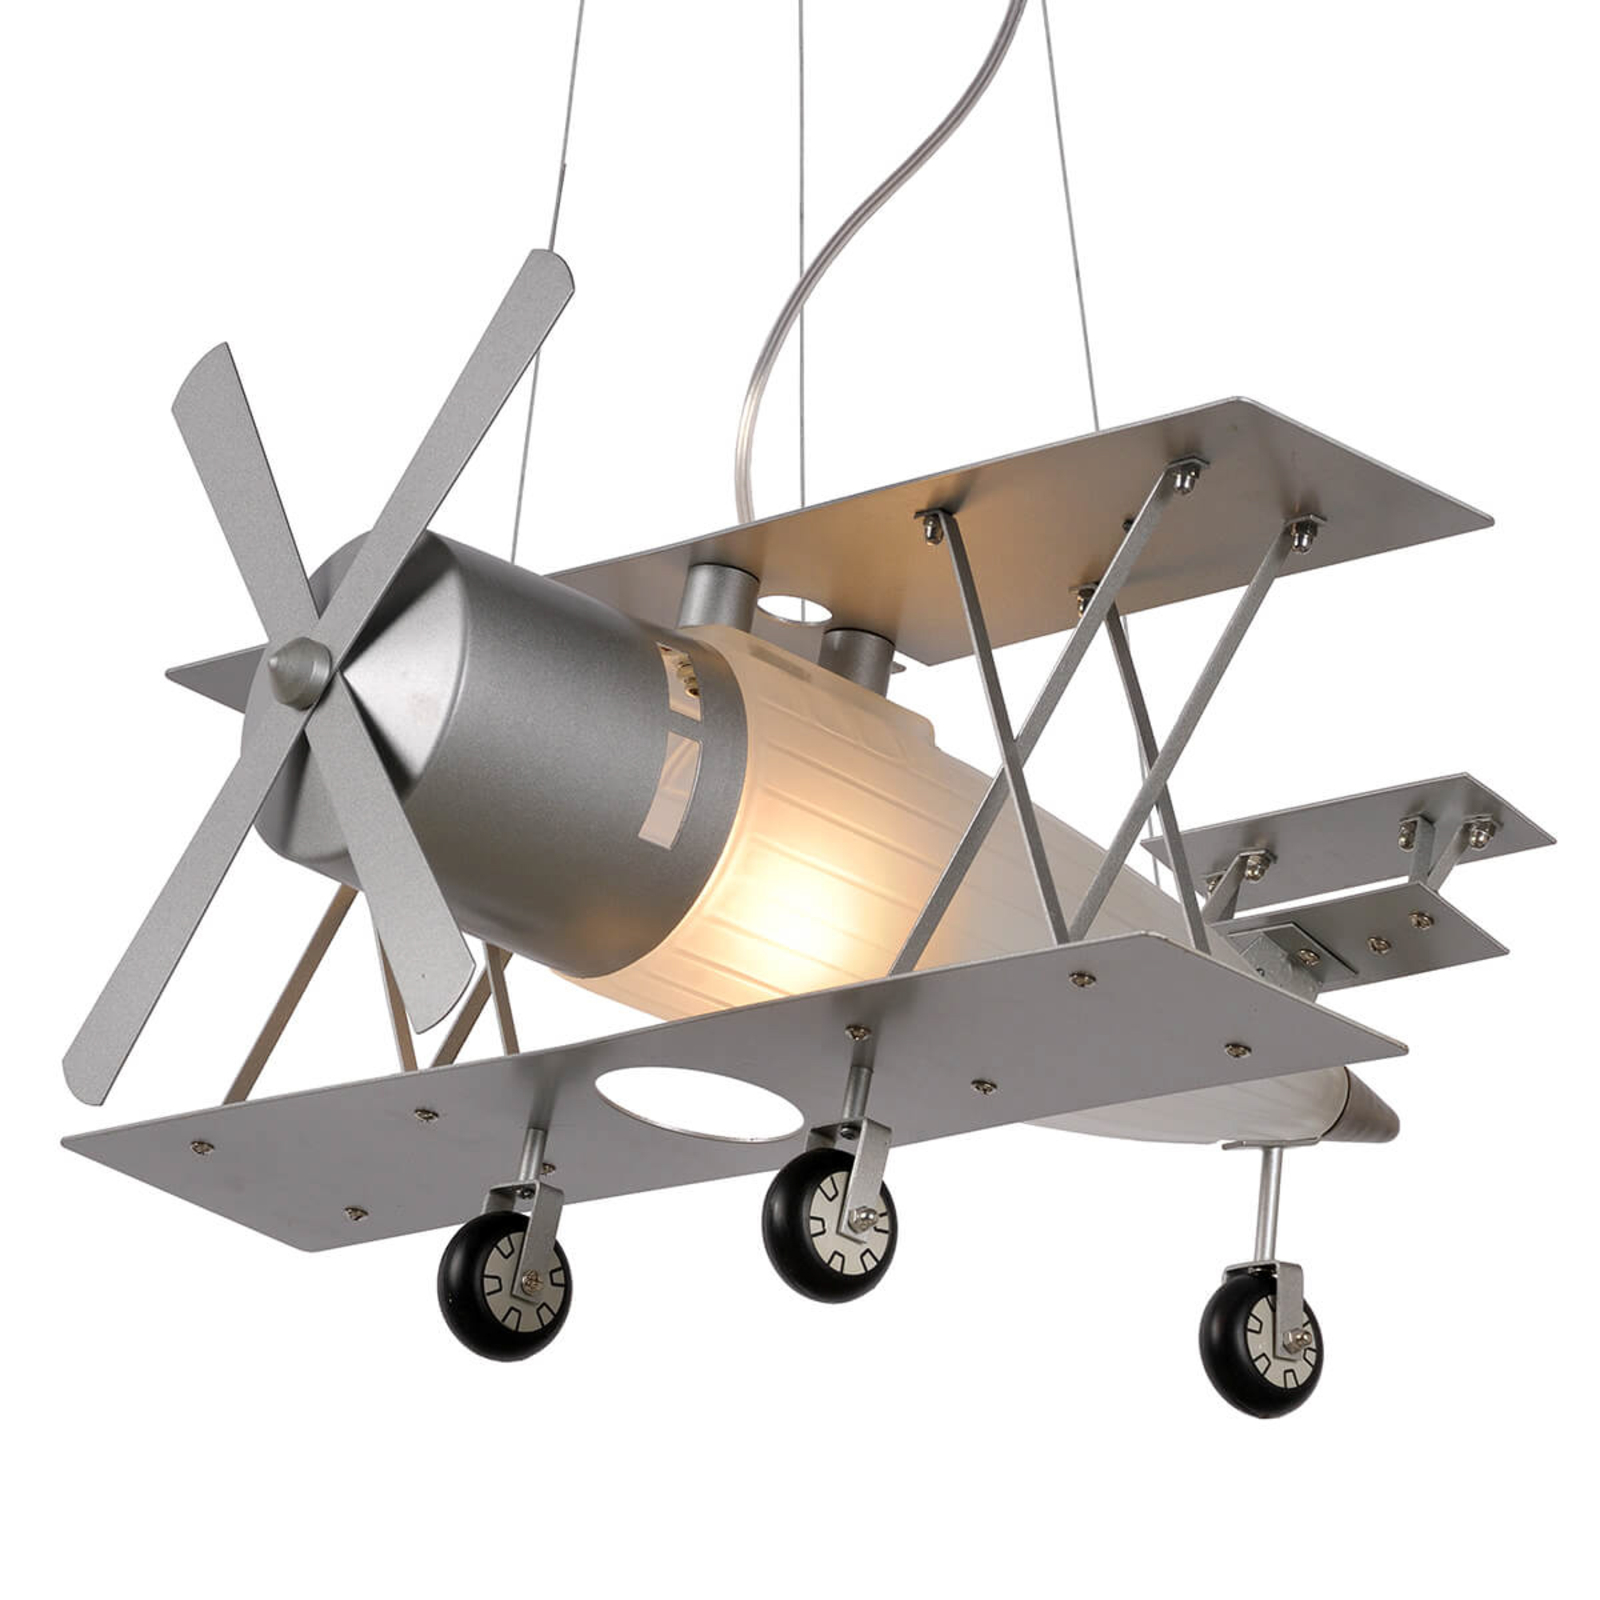 Focker - hanglamp in vorm van een vliegtuig